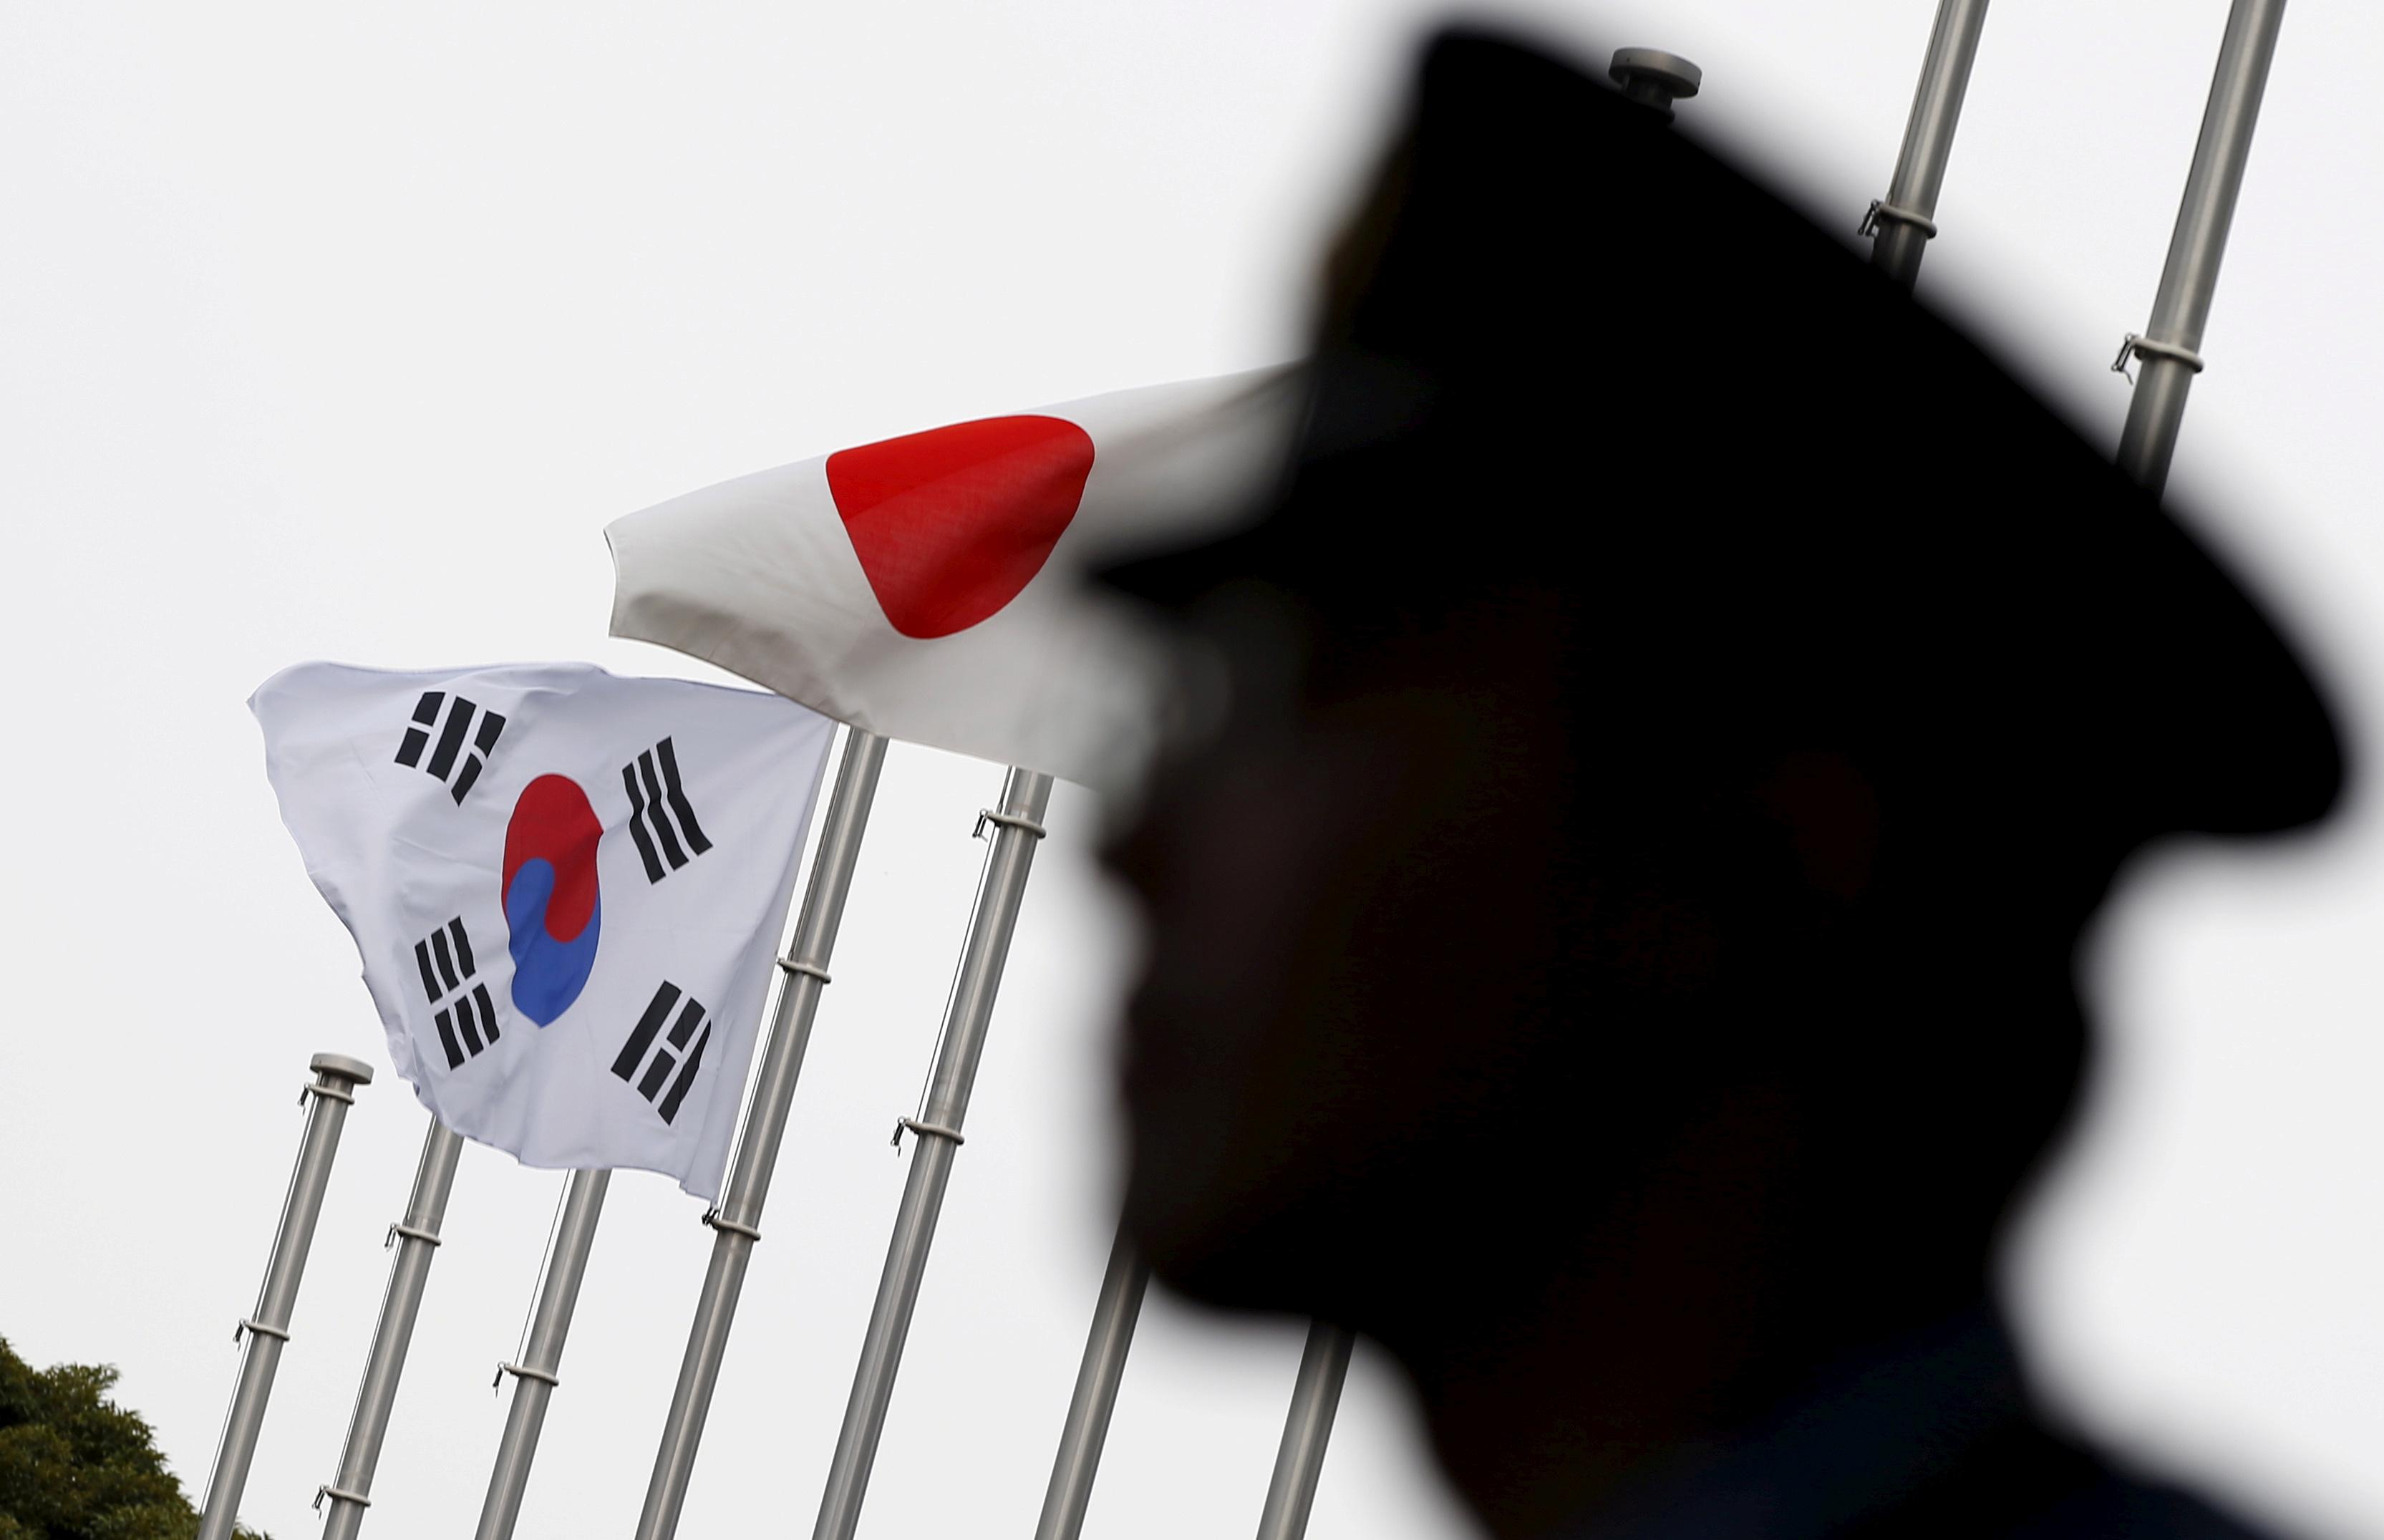 ‘Perbedaan’ antara Jepang dan Korea Selatan menggagalkan konferensi pers AS